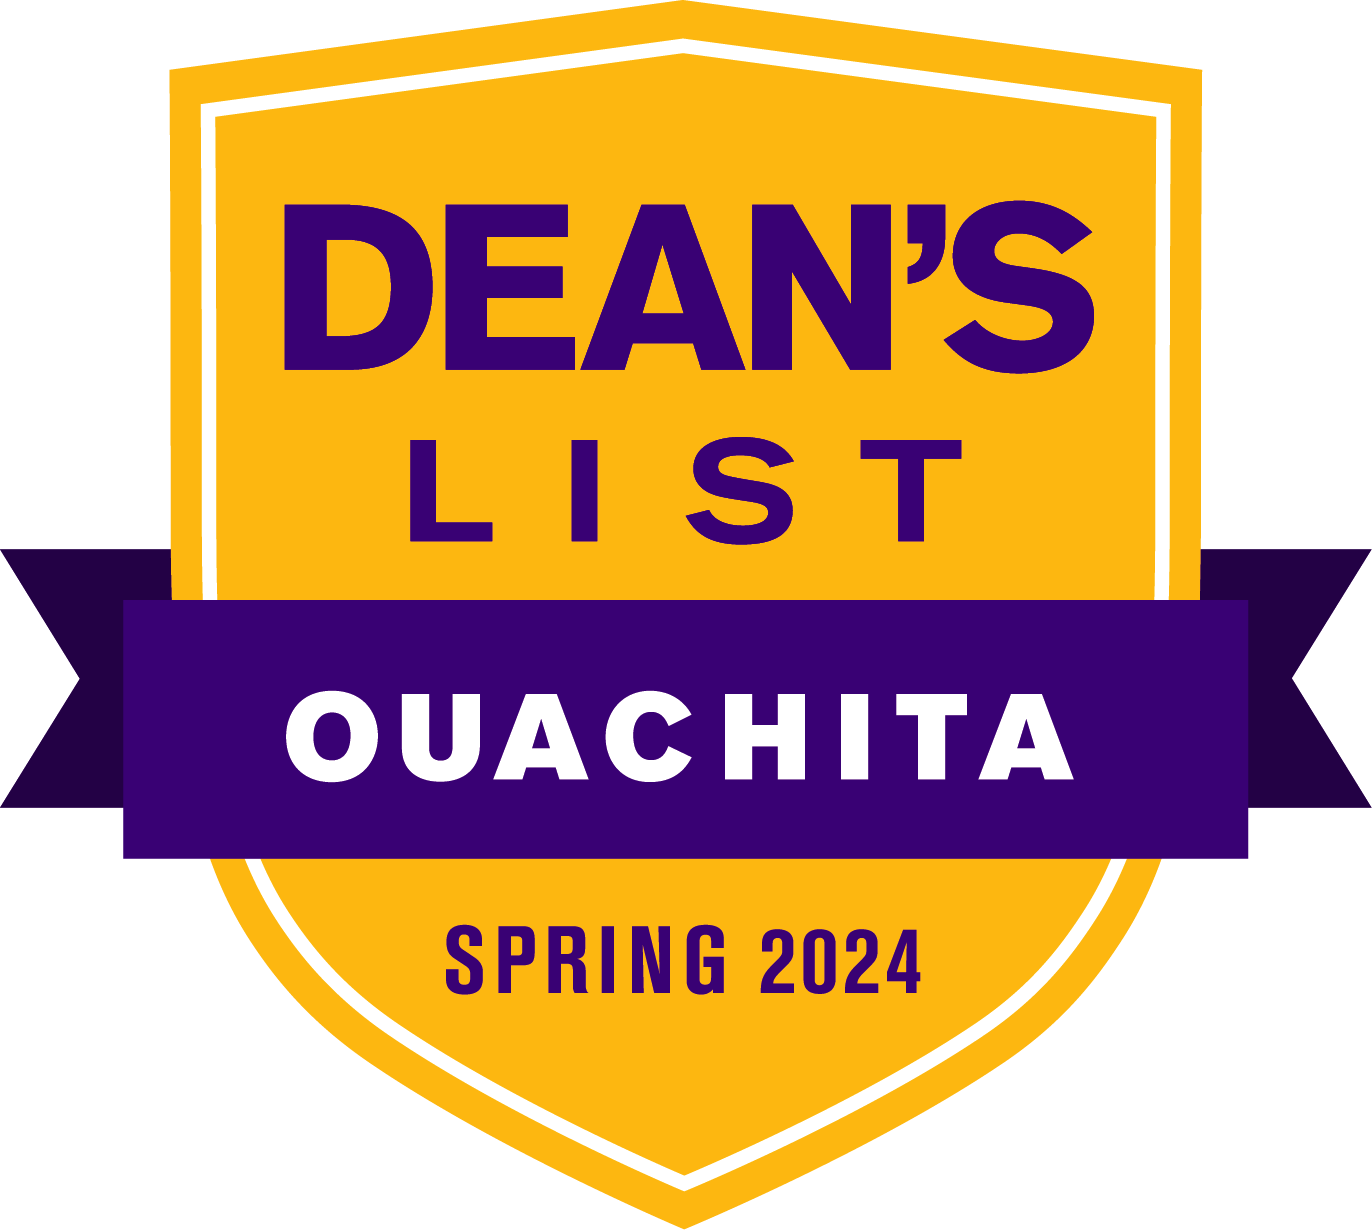 Spring 2024 Dean's List